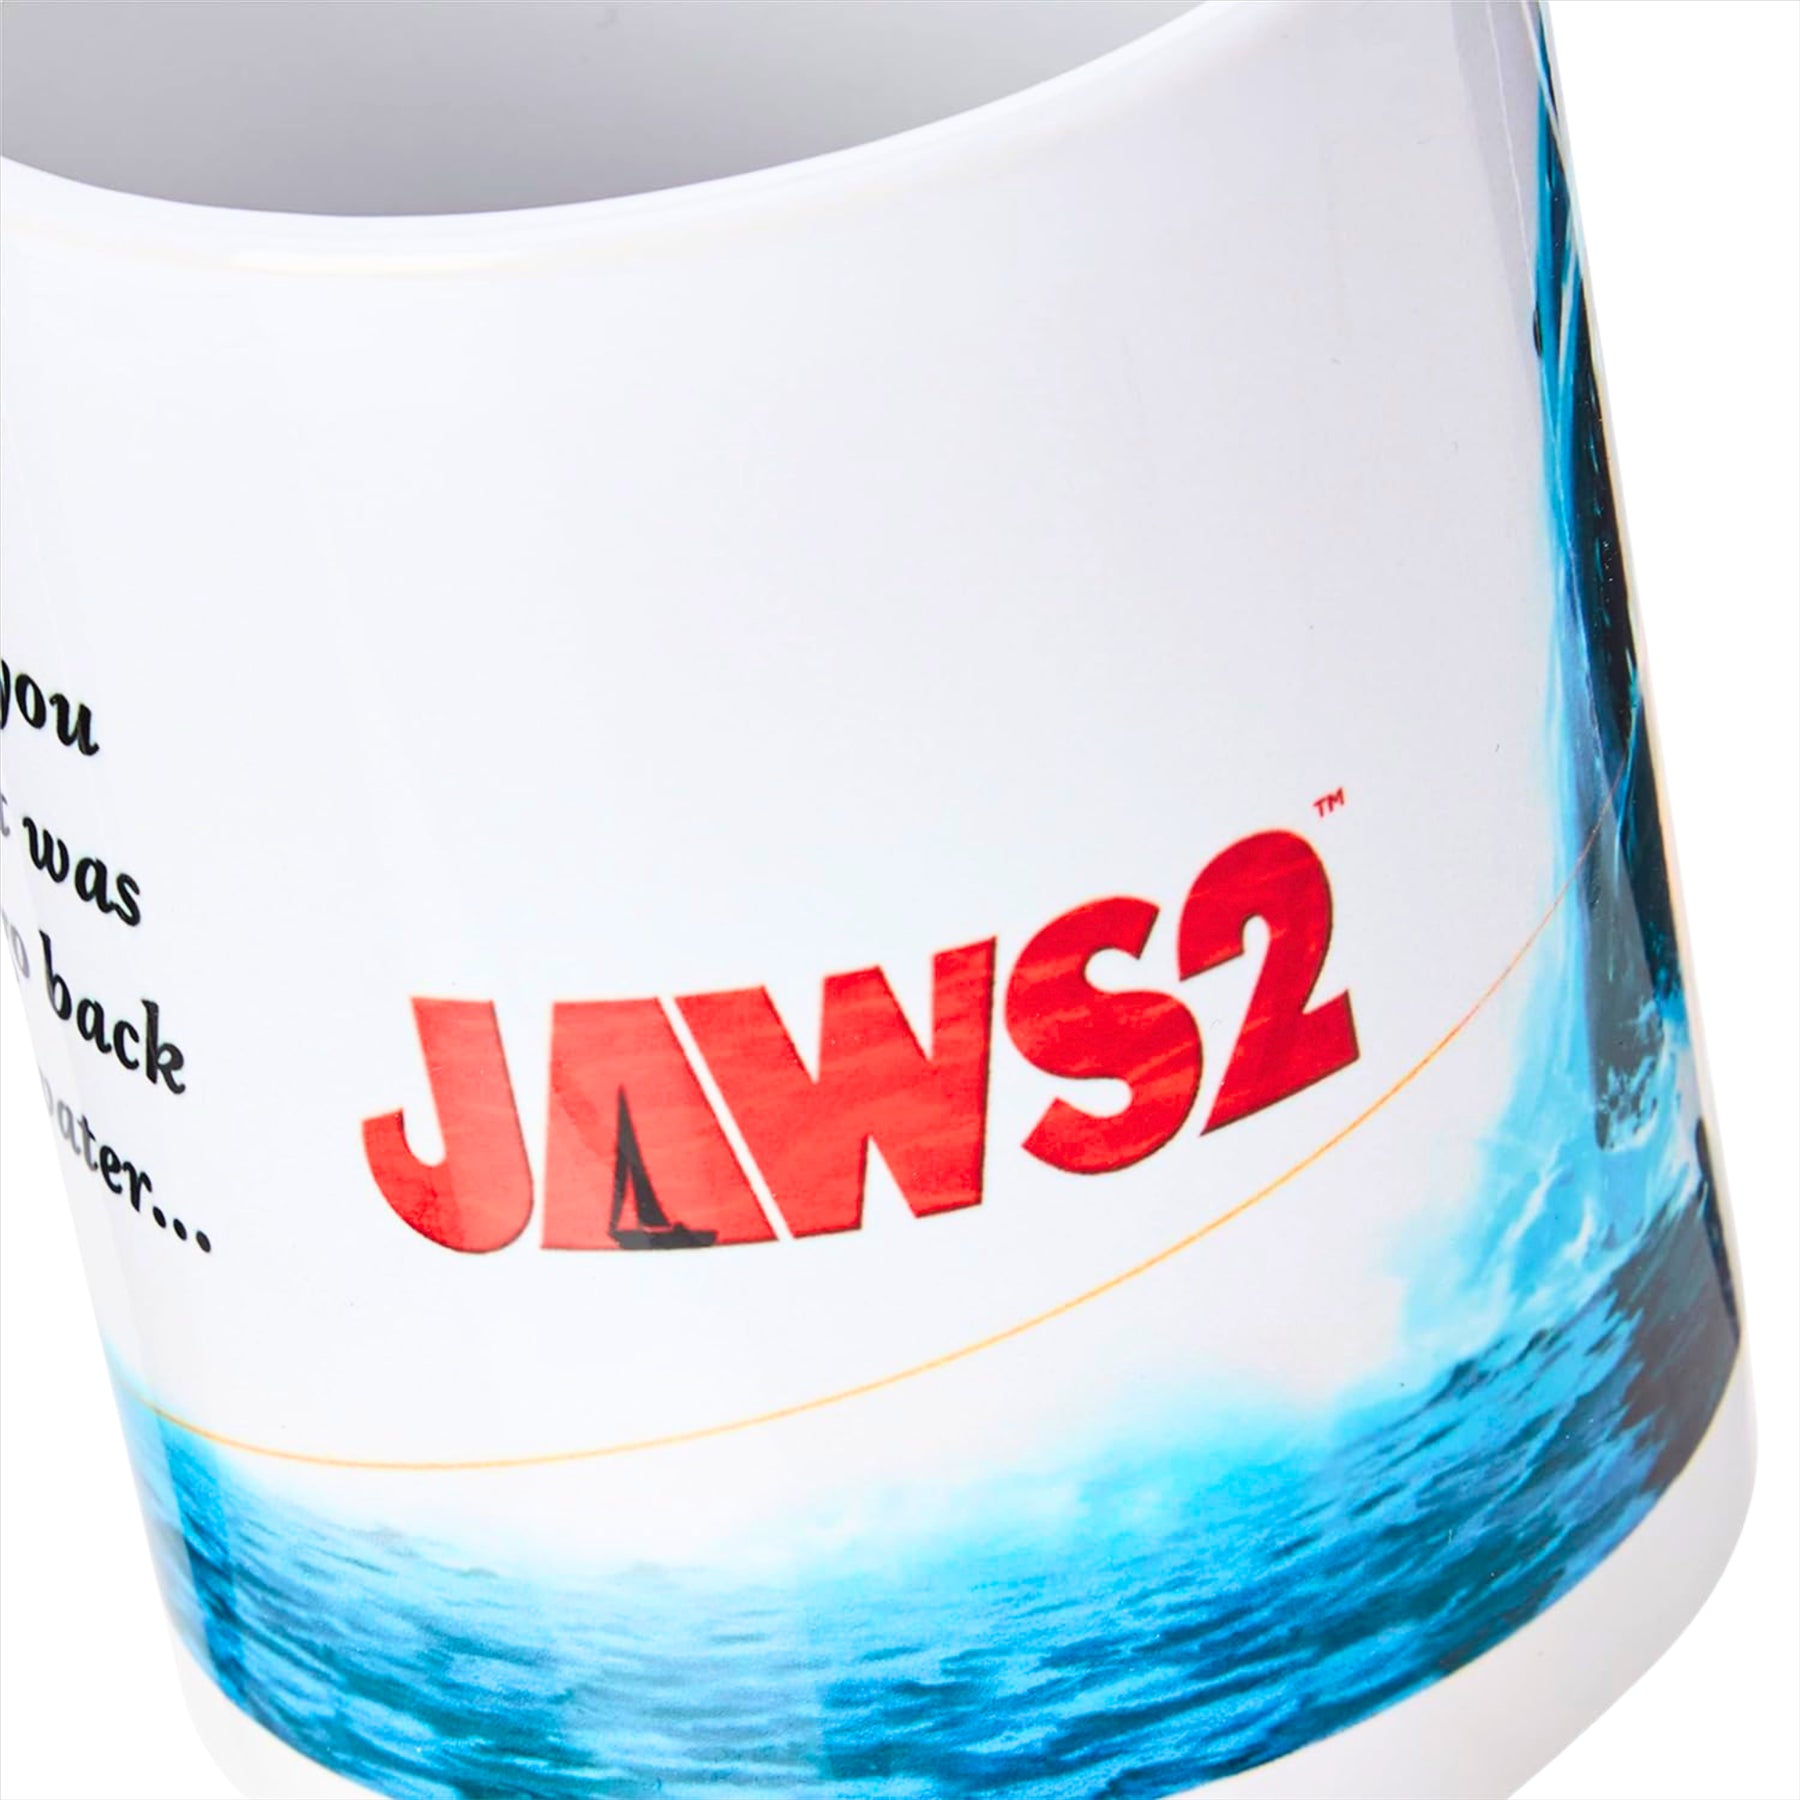 Jaws 2 Movie Poster Ceramic Coffee Mug 330ml